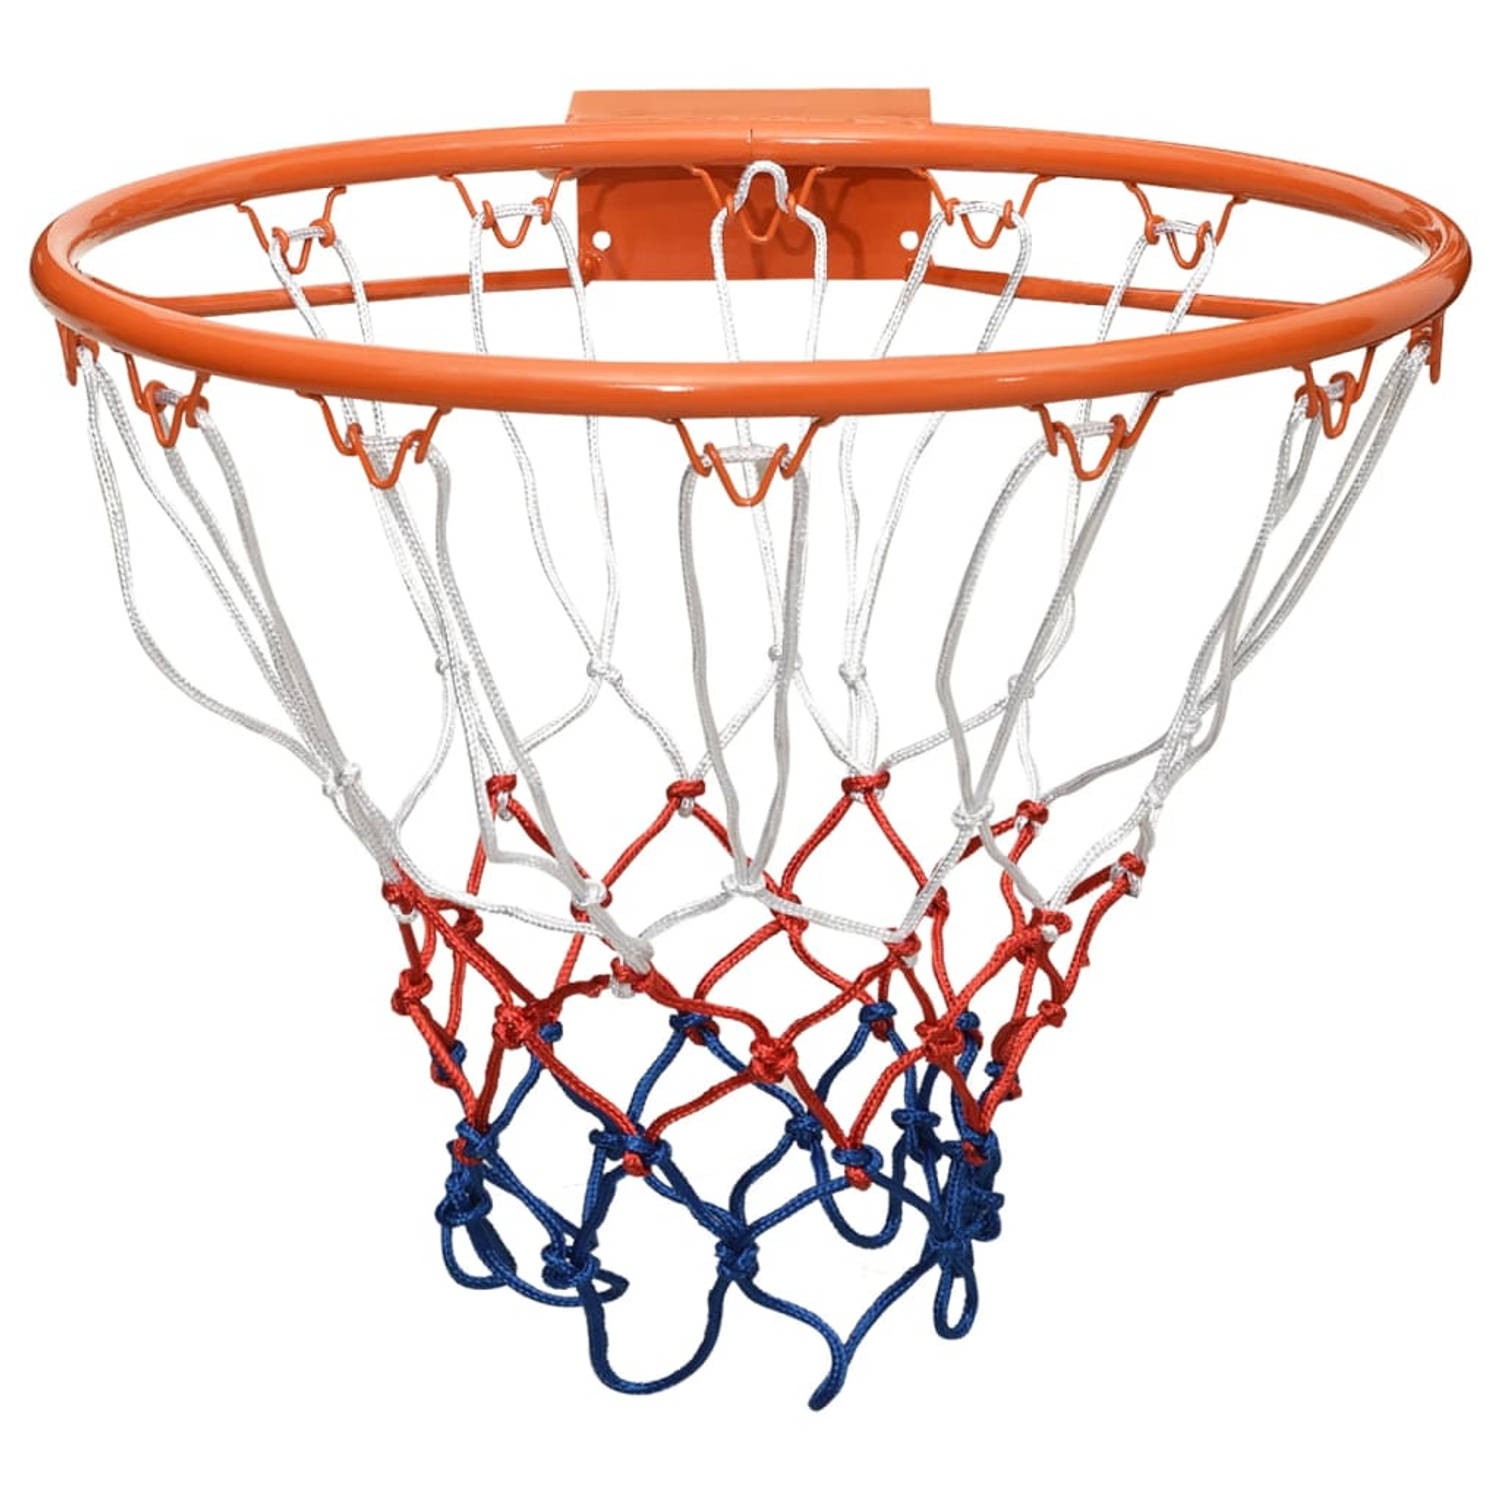 The Living Store Basketbalring - Klassieke stalen basketbalring voor alle weersomstandigheden - Wandmontage - Diameter 39cm - Montagematerialen inbegrepen